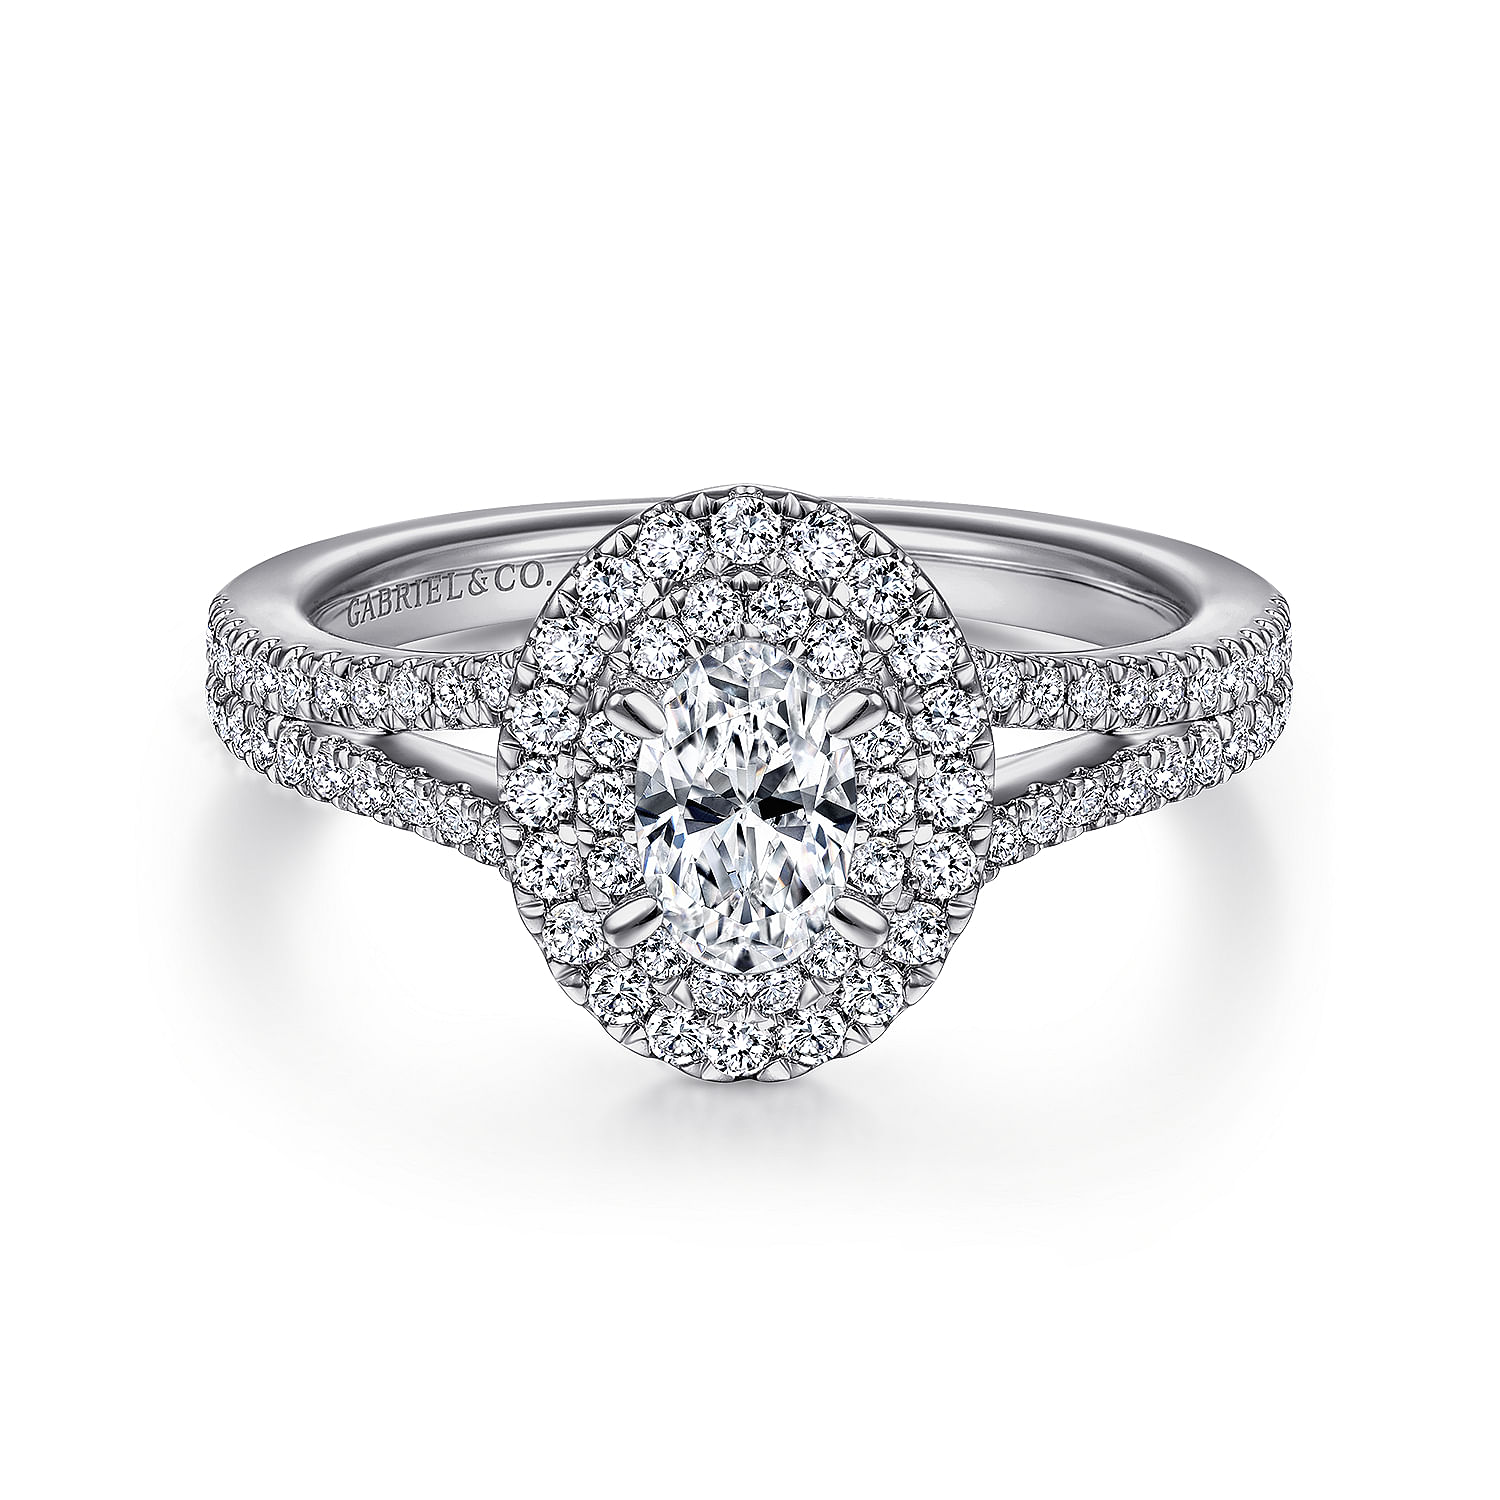 Bette - 14K White Gold Oval Diamond Engagement Ring